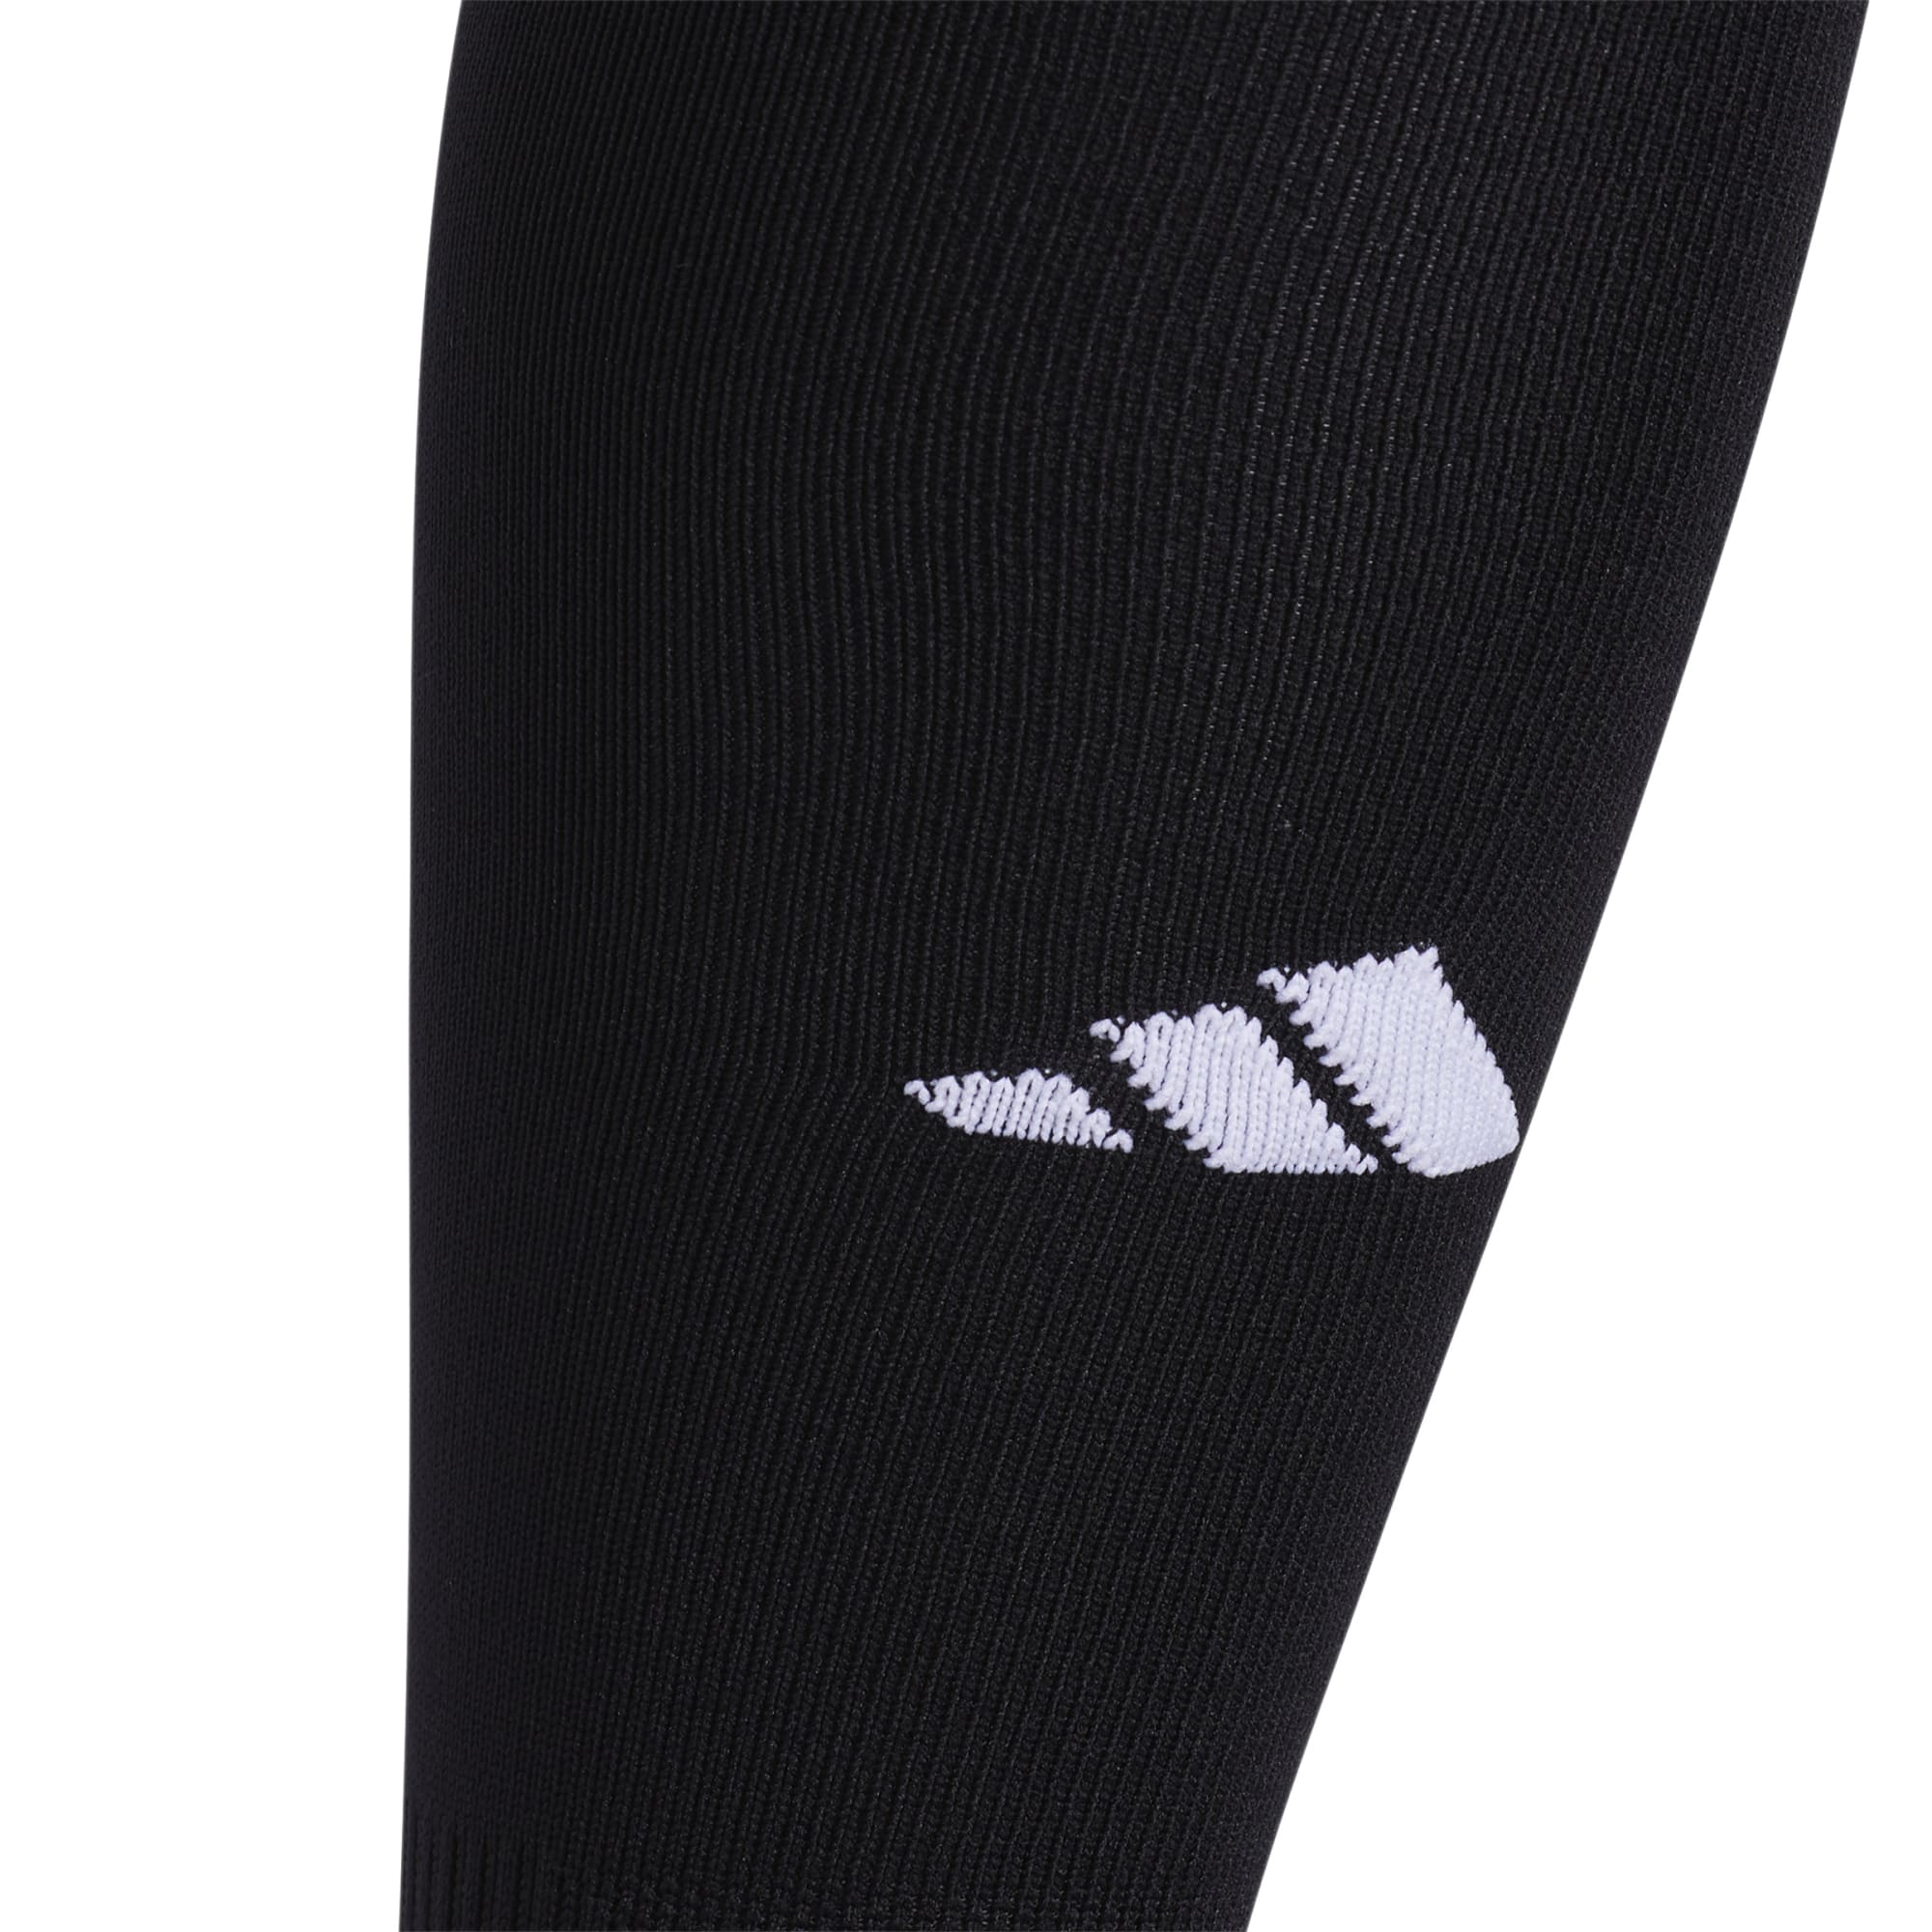 Adidas Metro Sock (Black) - GB4217